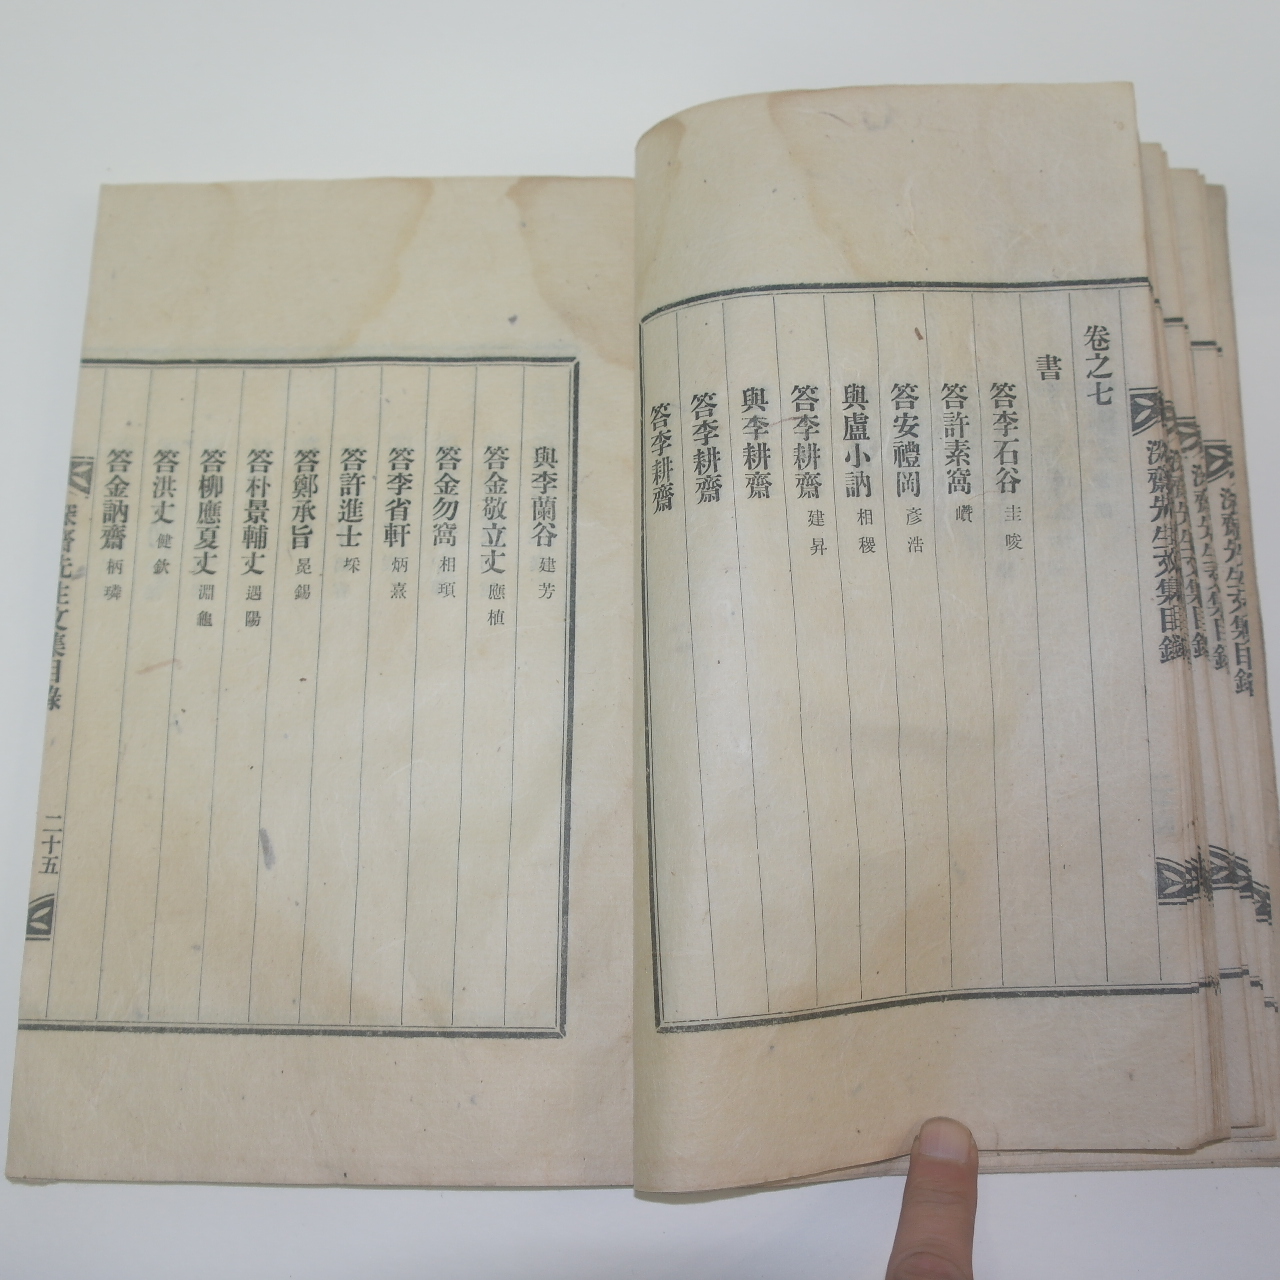 1935년 조긍섭(曺兢燮) 심재선생문집(深齋先生文集) 목록 1책